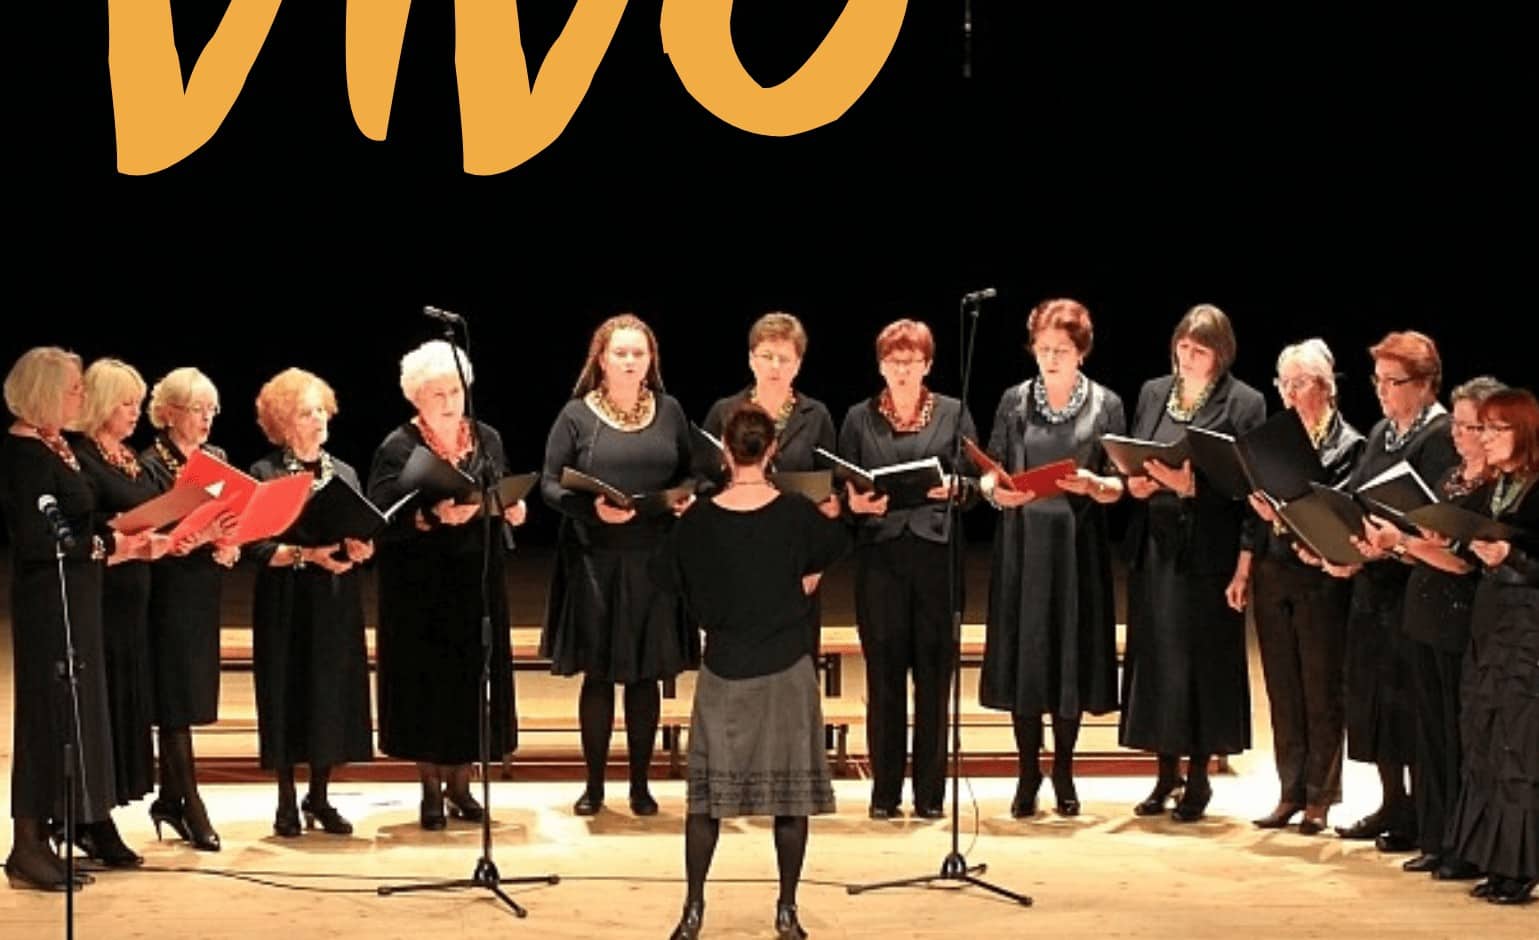 Raciborskie Centrum Kultury zaprasza na jubileuszowy koncert Chóru VIVO